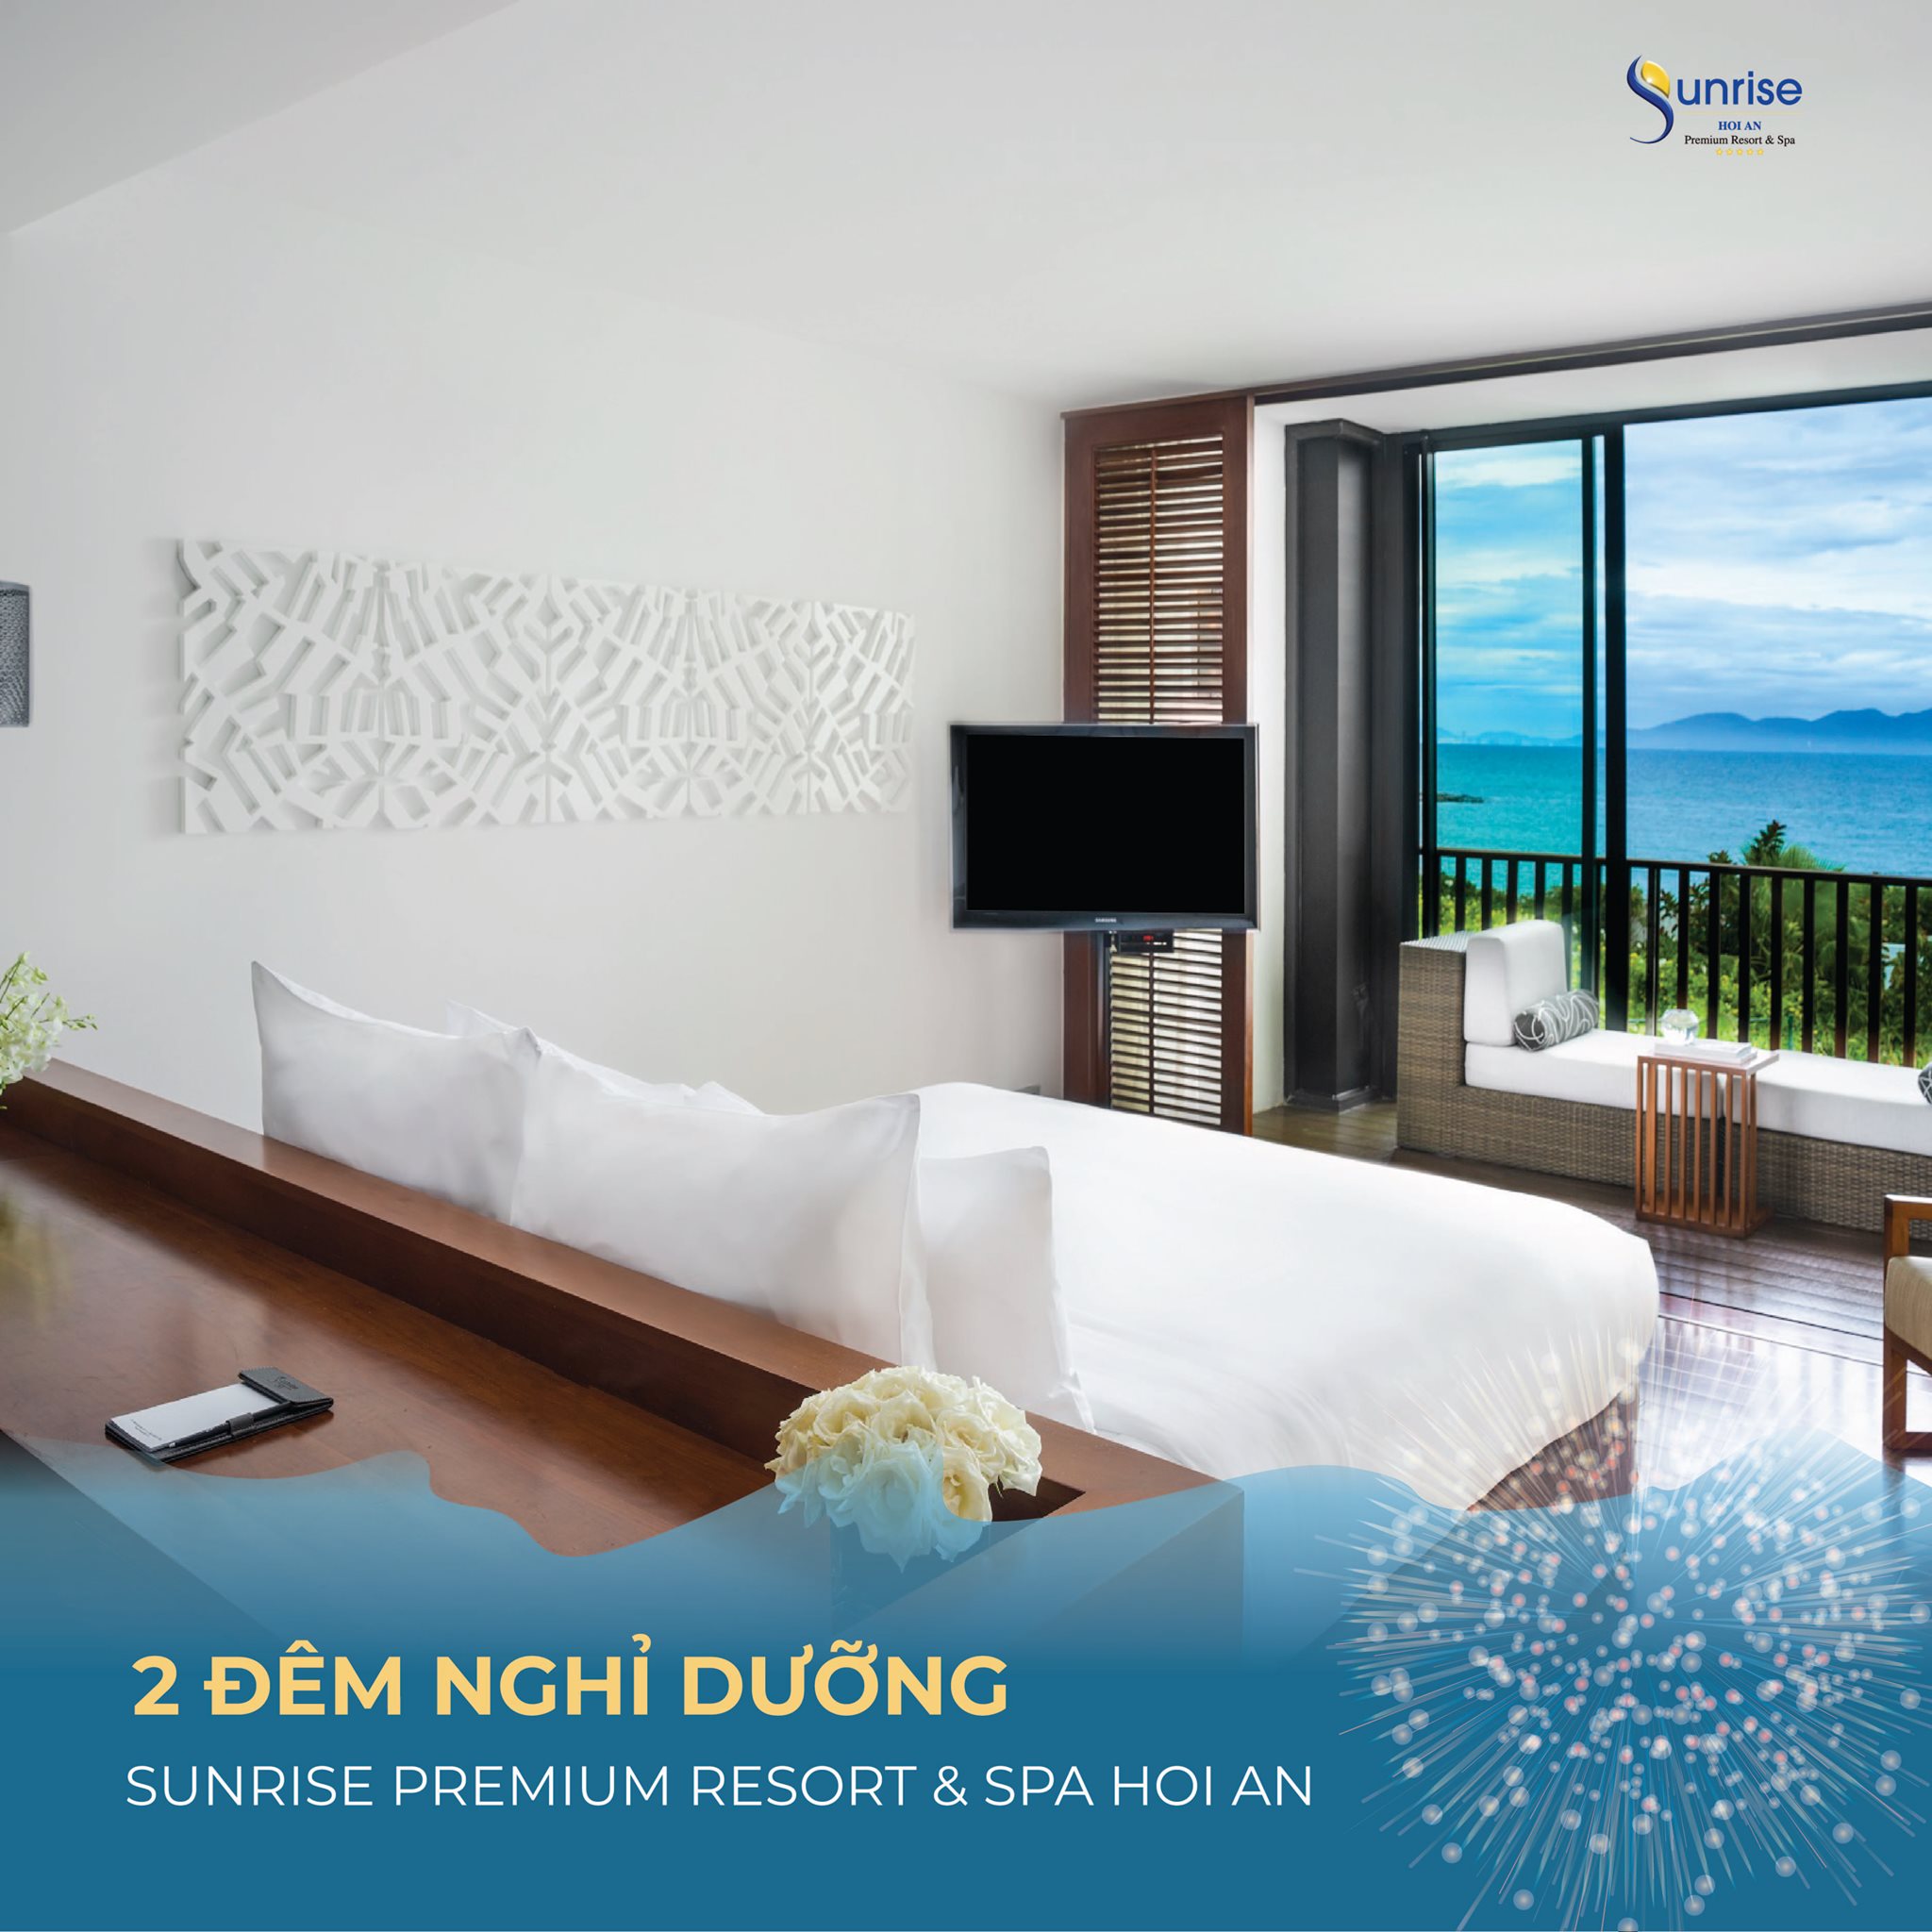 Sunrise Premium Resort & Spa Hoi An ảnh 2